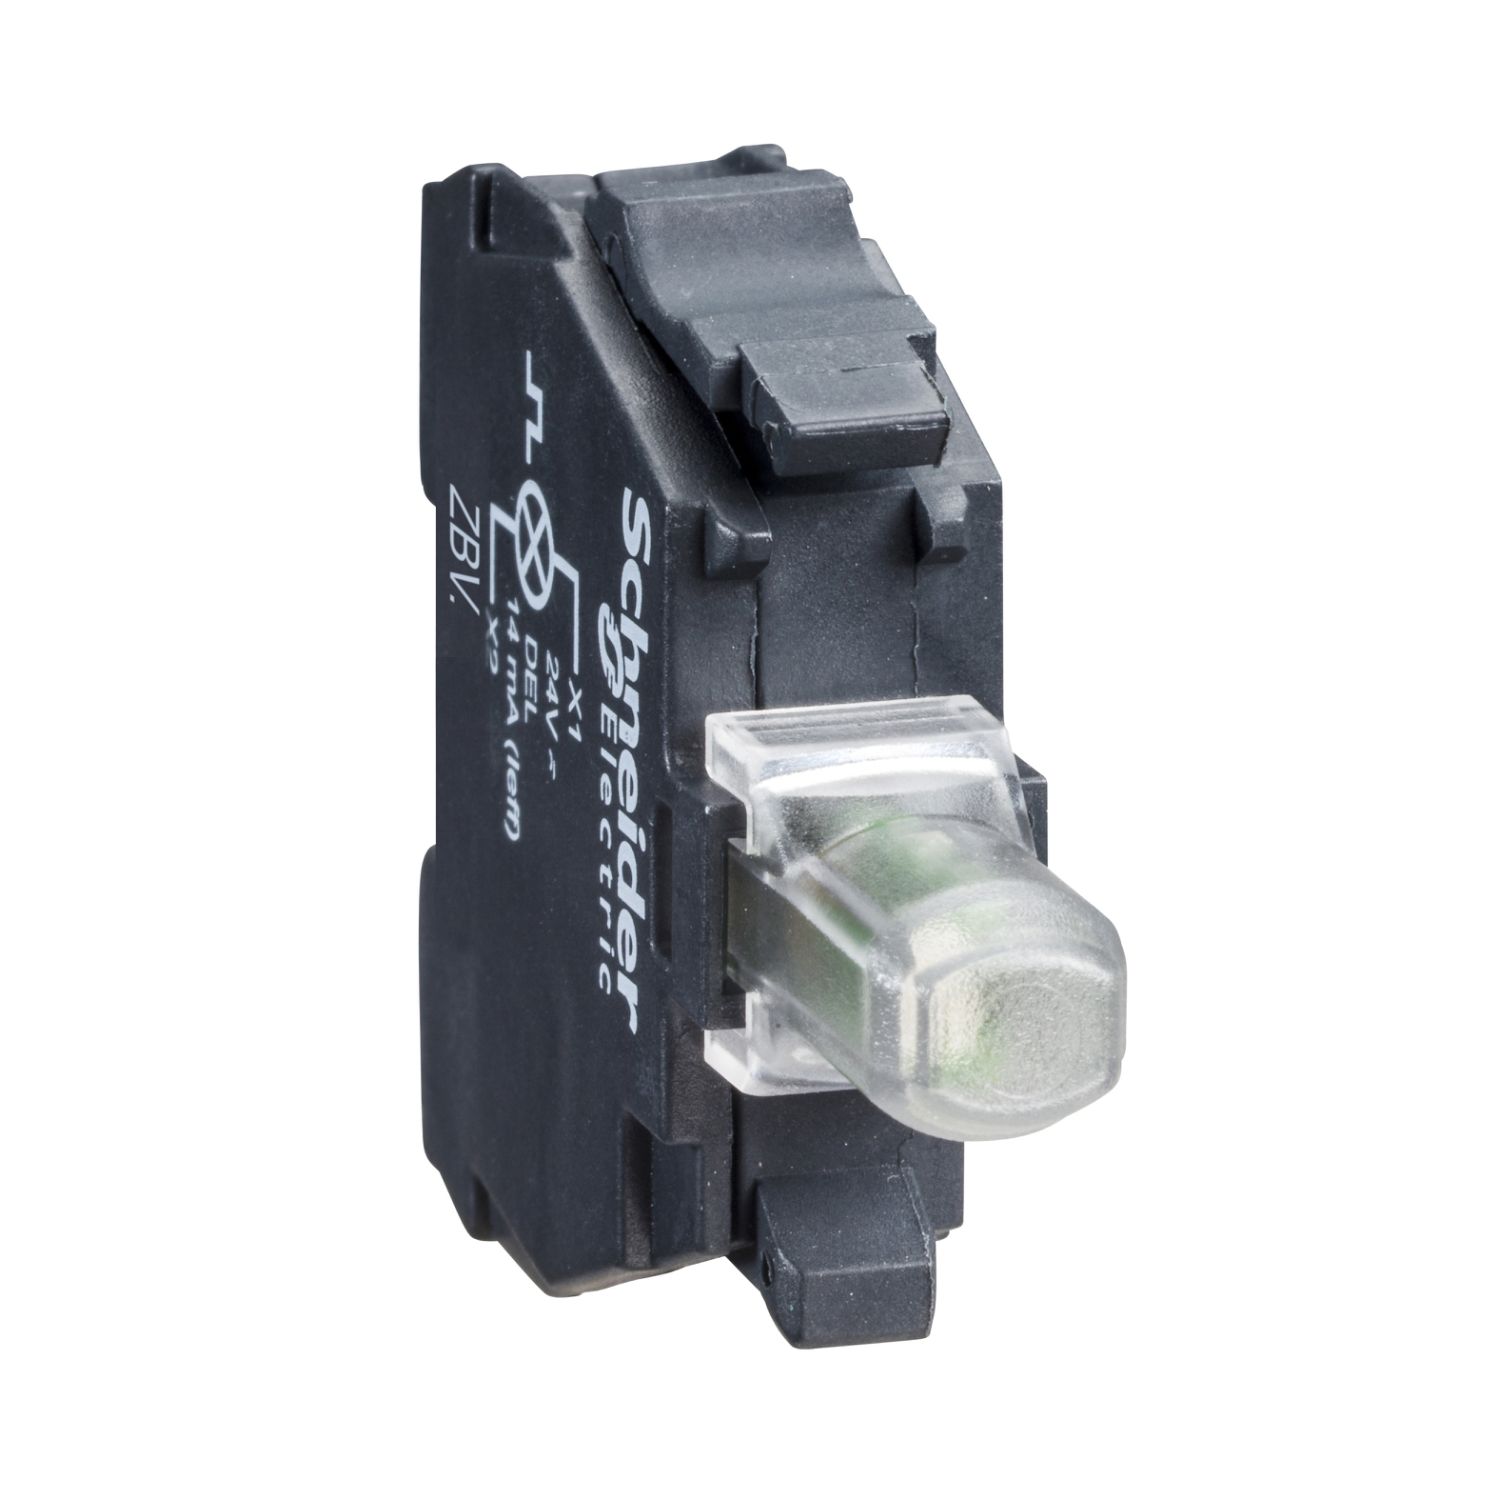 ZBVB3 green light block for head Ø22 integral LED 24V screw clamp terminals